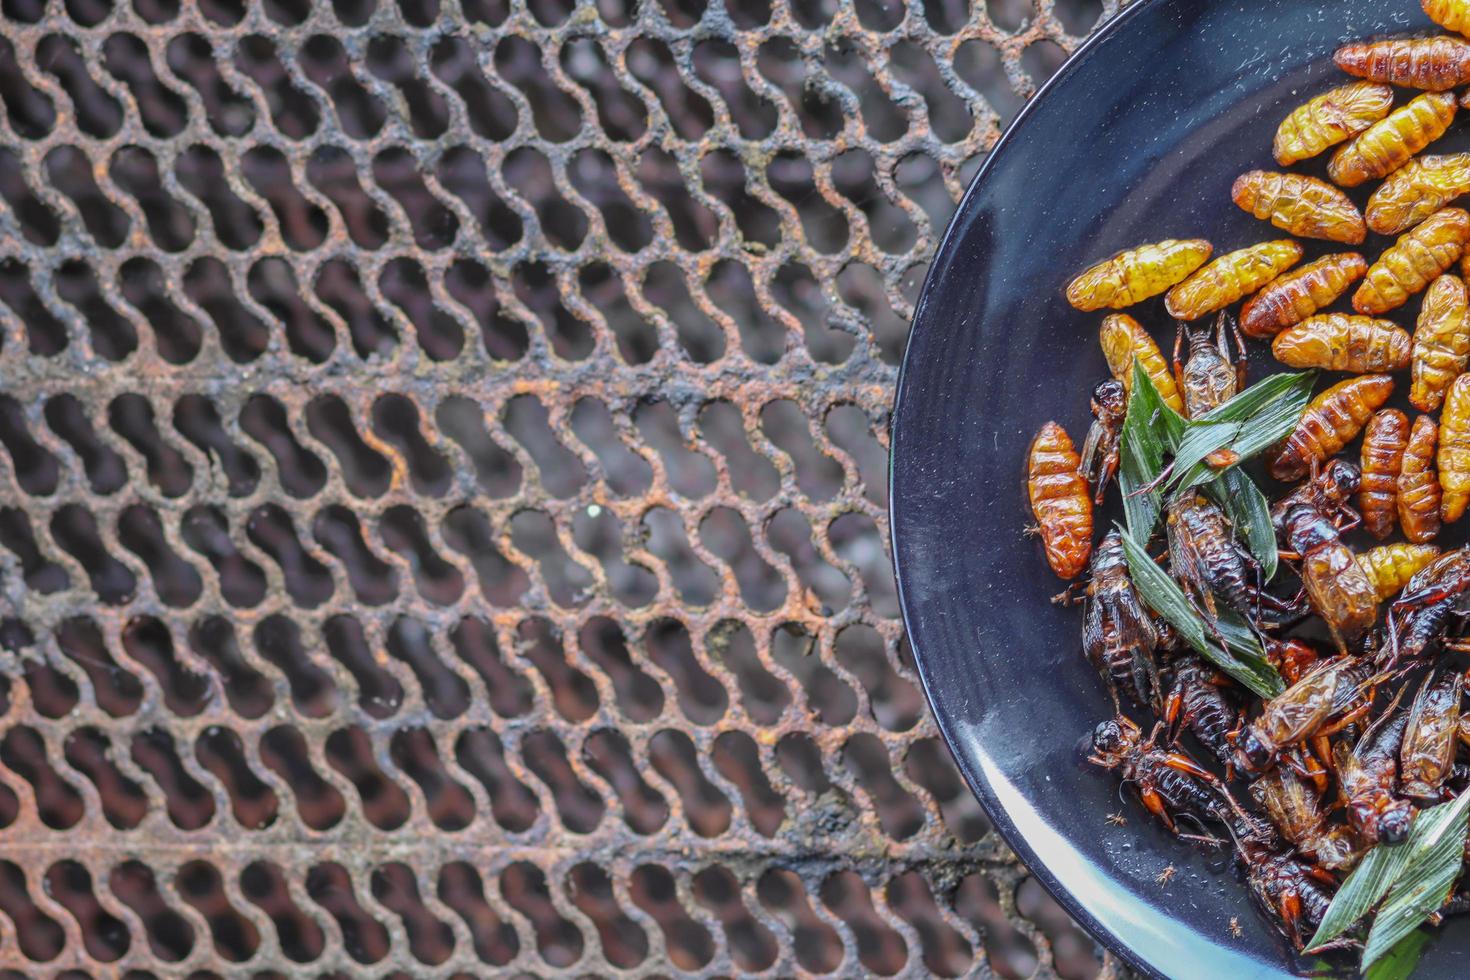 Frasiga insekter serveras i svarta keramiska tallrikar placerade på bord av stålgaller, och stekta insekter är en populär mat i kombination med alkoholhaltiga drycker eftersom de är lätta att hitta och mycket populära foto